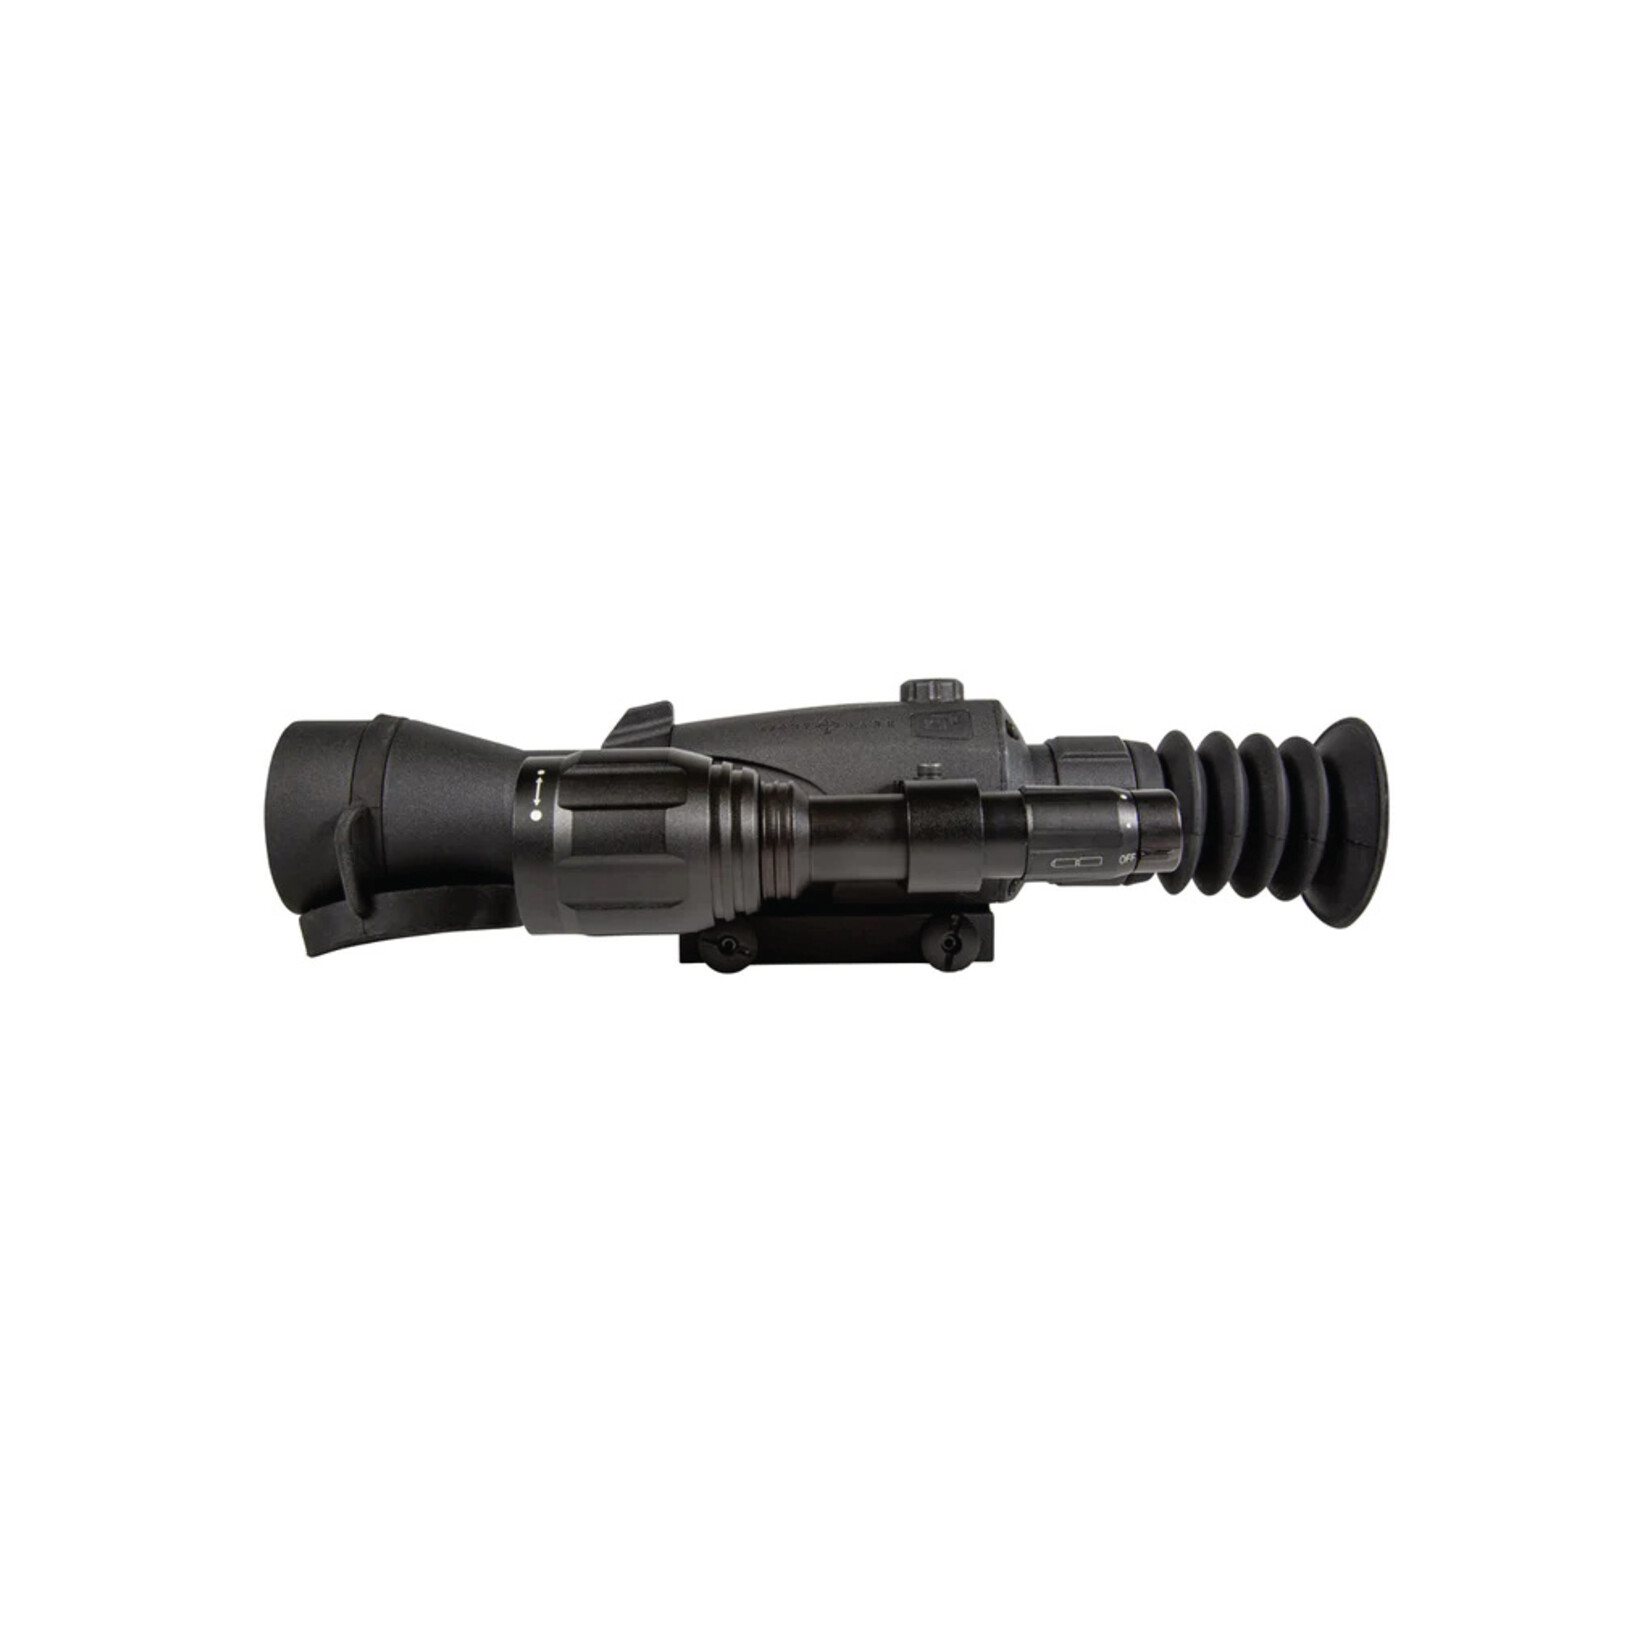 Sightmark Wraith 4K Max 3-24x50 Digital Rifle Scope